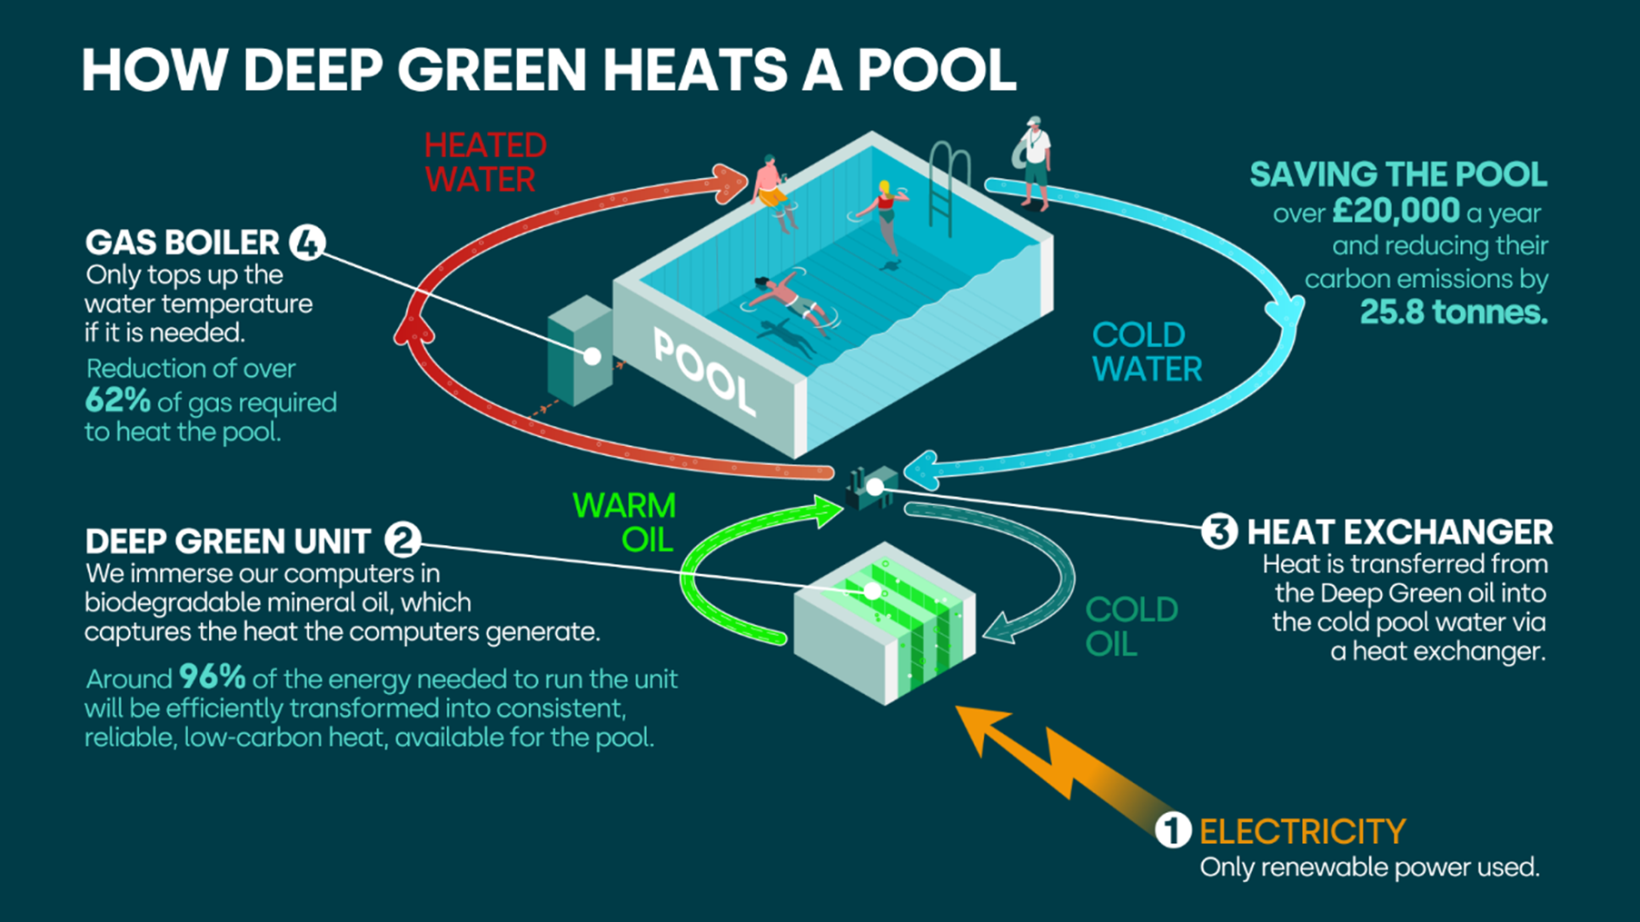 کیسه های Deep Green 200 میلیون پوند برای گرم کردن صدها استخر شنا با انرژی مرکز داده